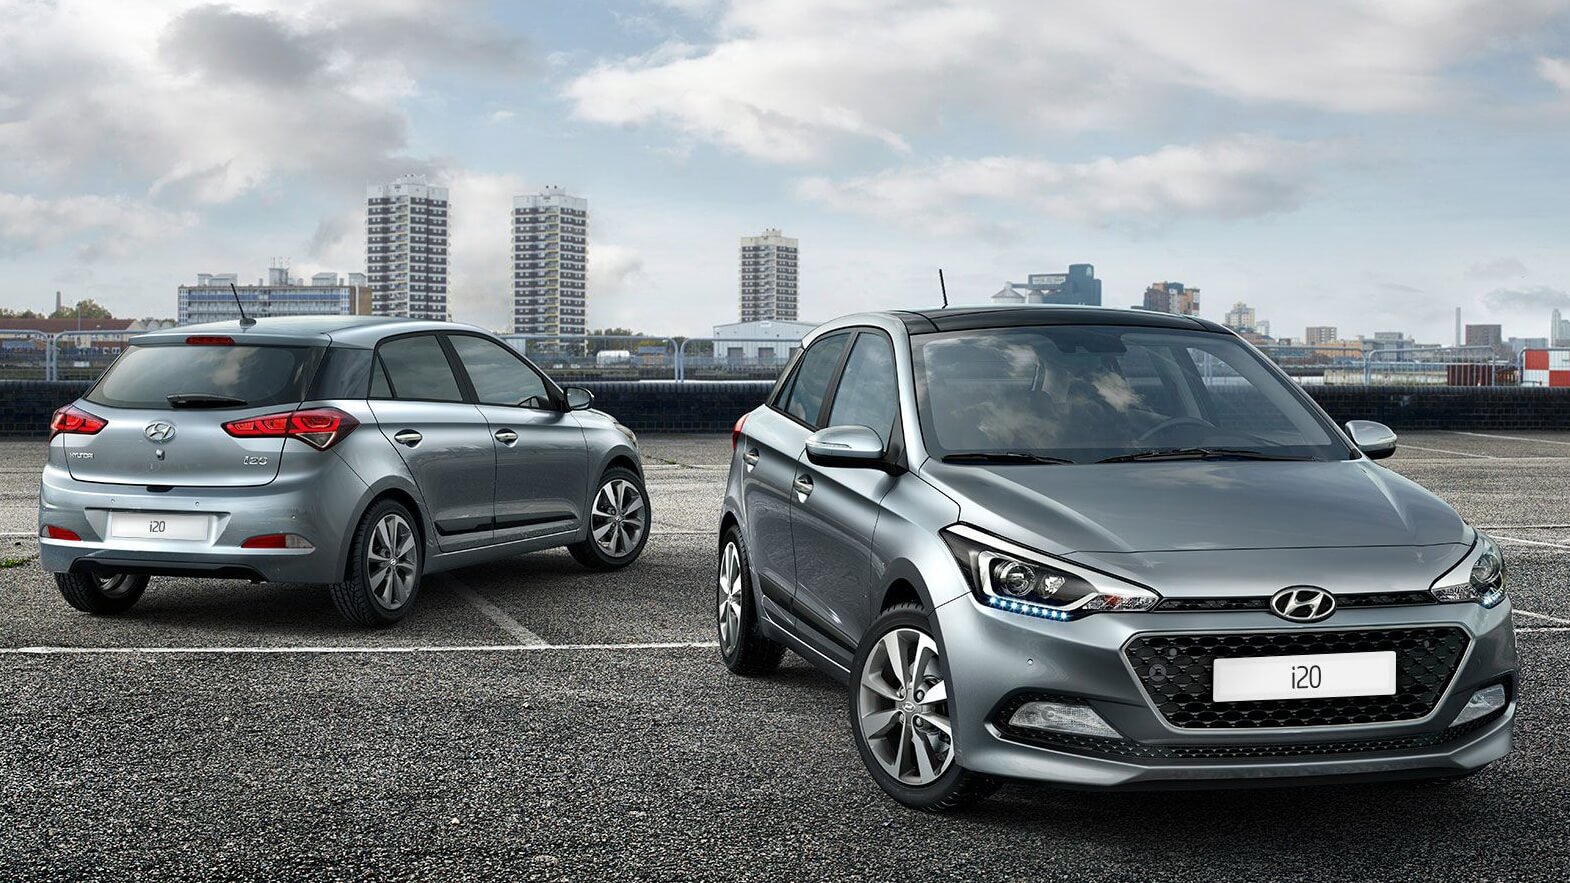 Hyundai: Και επίσημα το τρίτο μοντέλο «N» θα είναι το i20